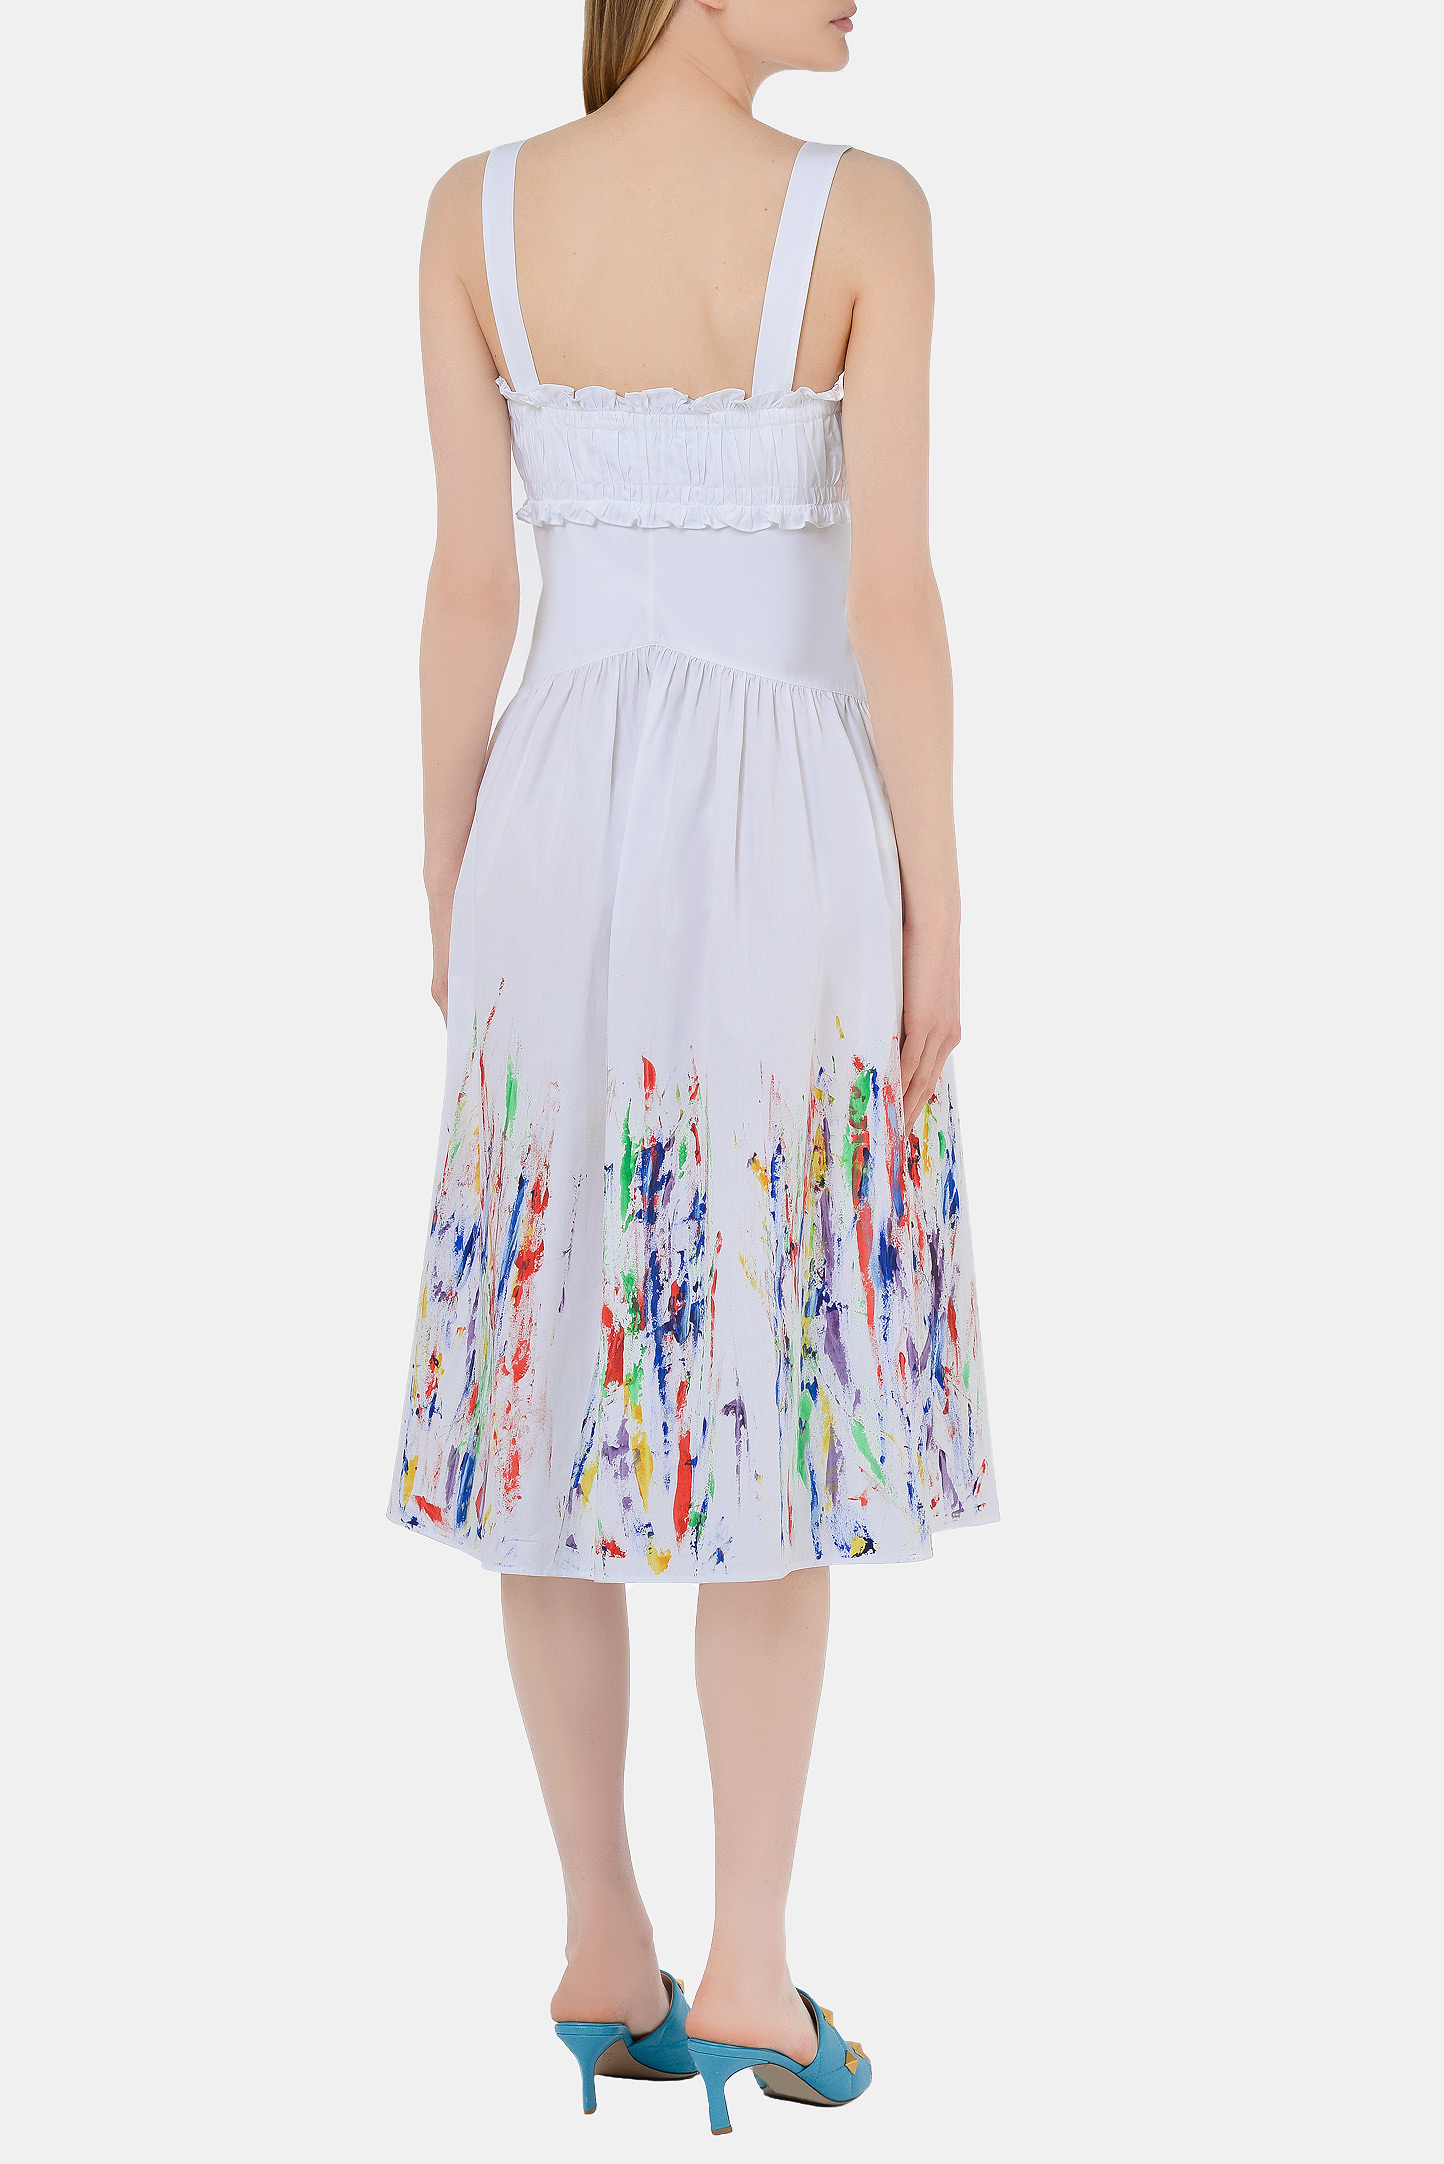 Платье PHILOSOPHY DI LORENZO SERAFINI A0406-2119, цвет: Белый, Женский